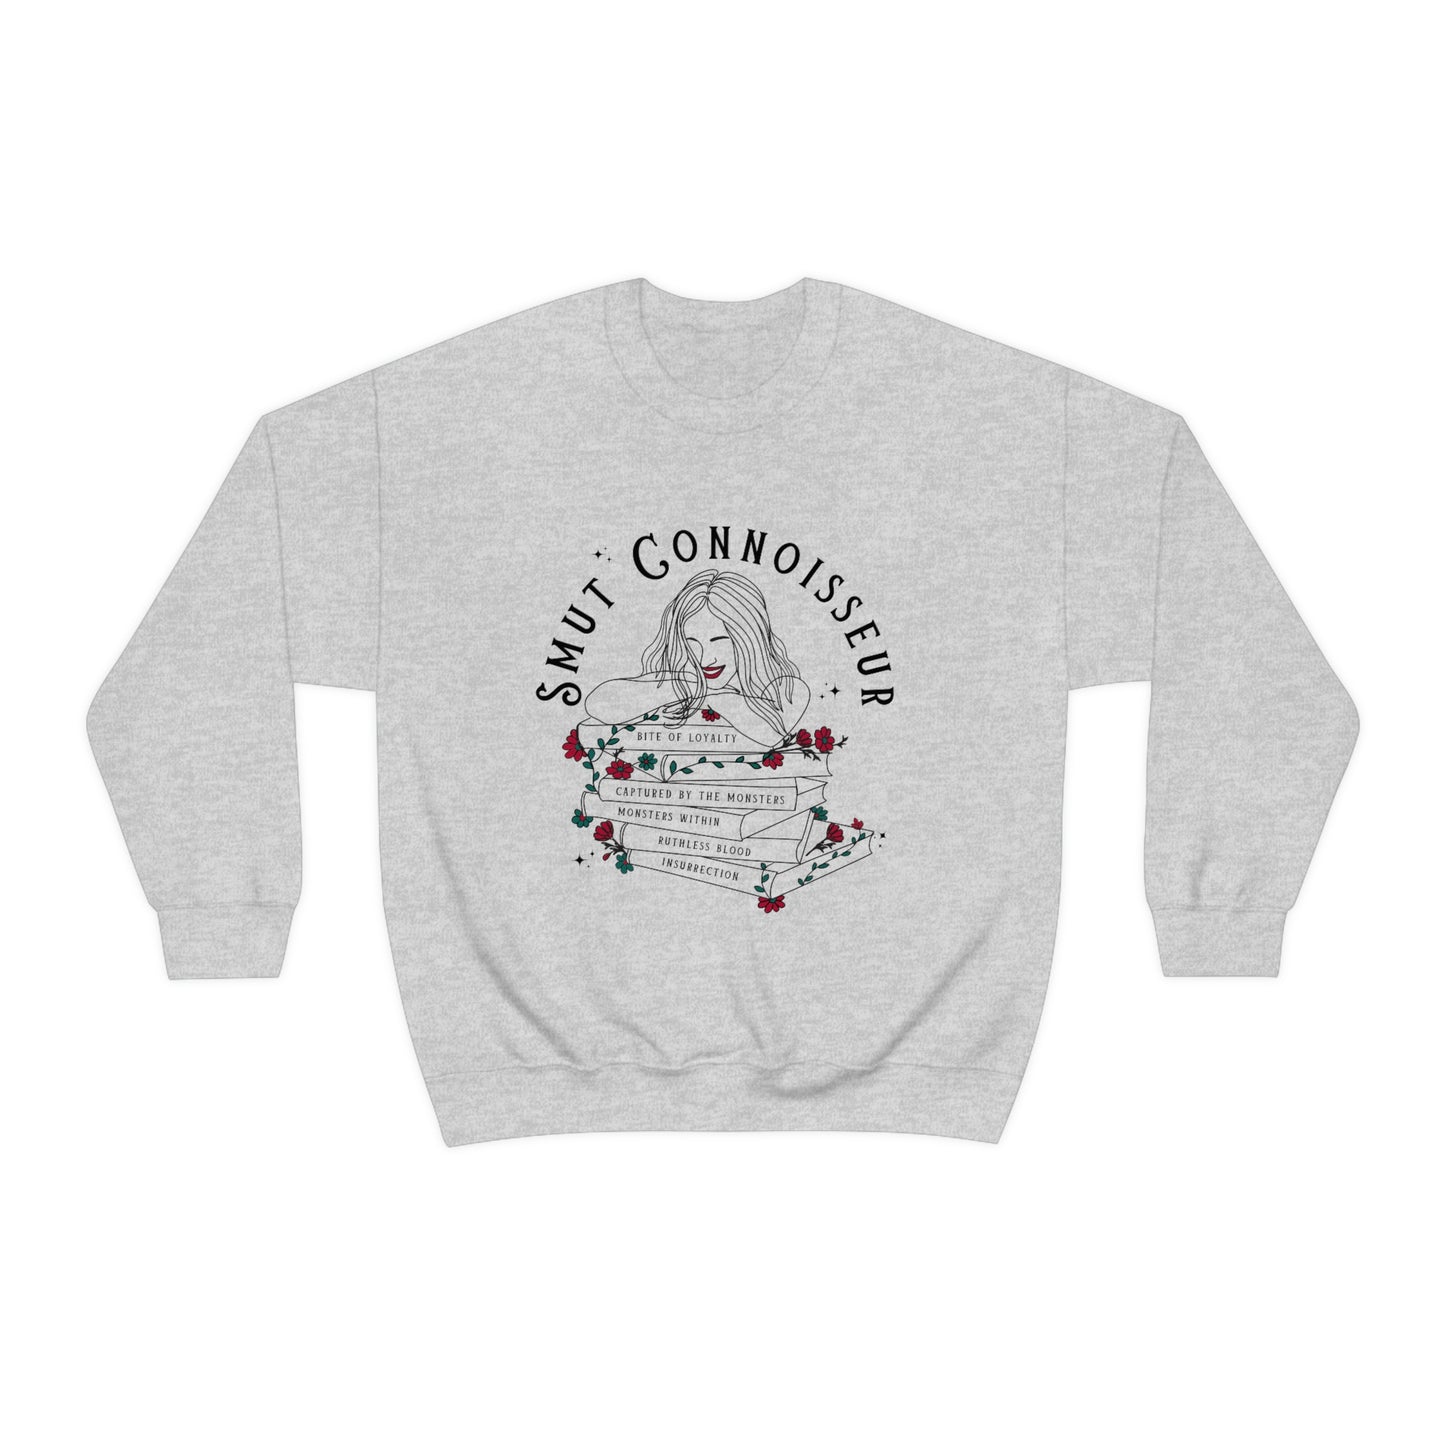 Smut Connoisseur Crewneck Sweatshirt